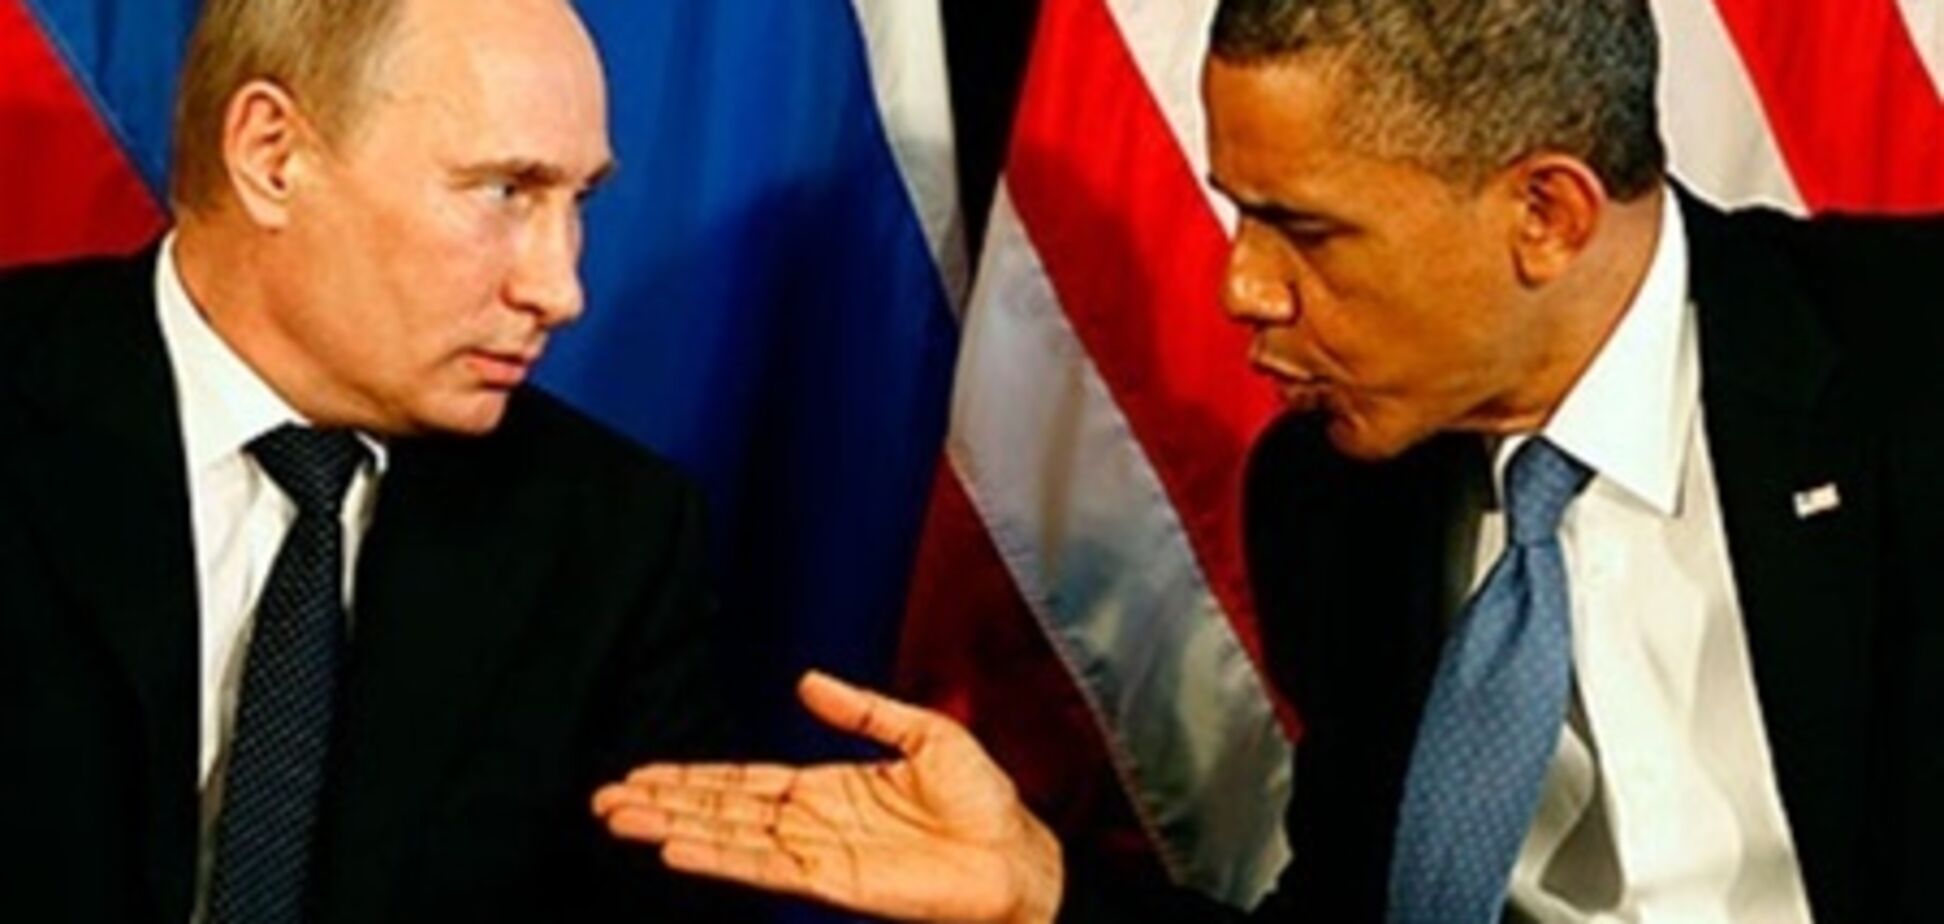 Обама обговорює з Путіним ПРО і ядерні арсенали